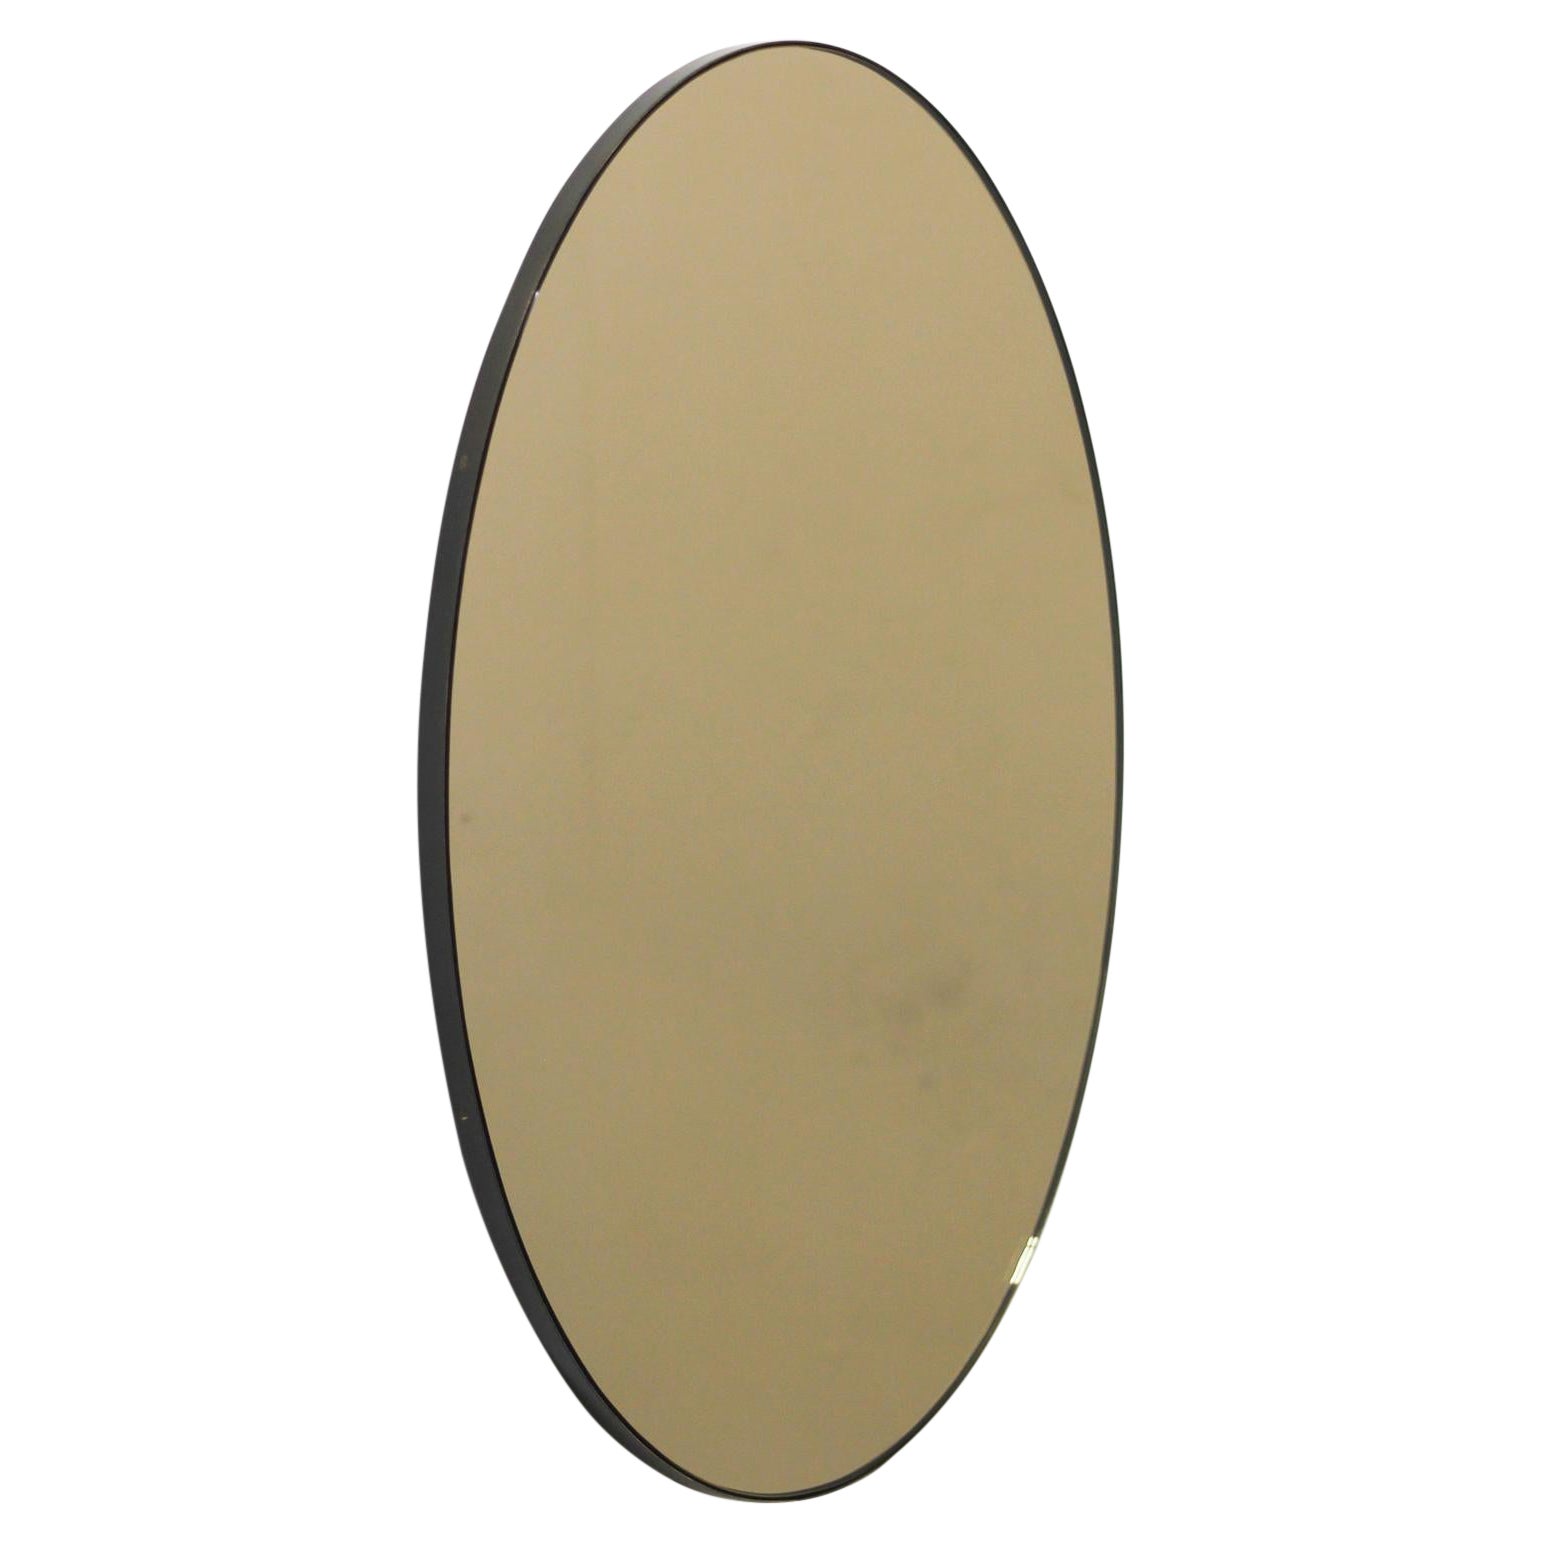 Ovalis Oval Bronze getönter Contemporary Spiegel mit Patina Rahmen, klein